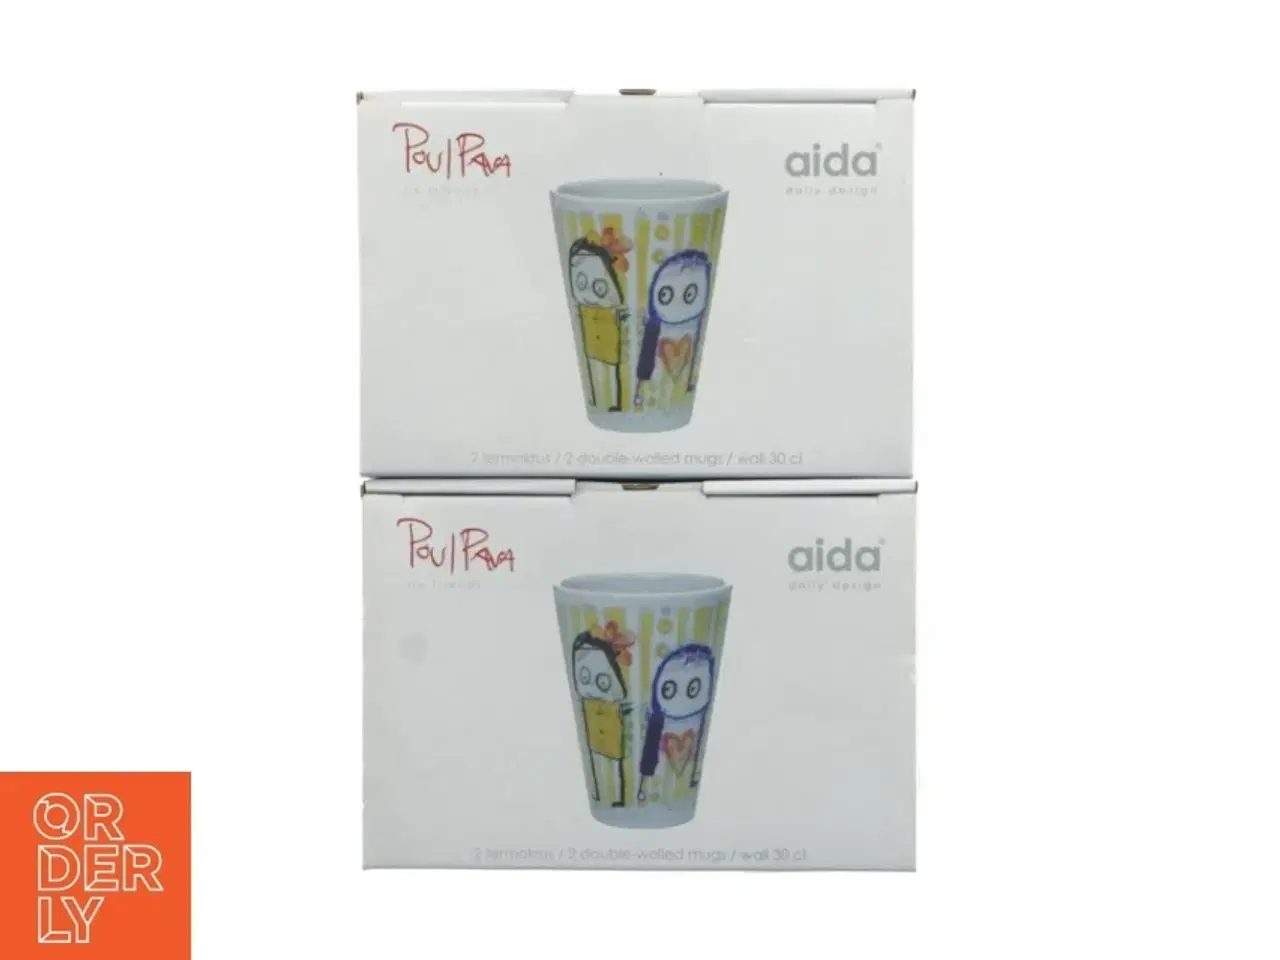 Billede 1 - Aida porcelænskrus med Paul Pava design fra Aida (str. 12 cm)